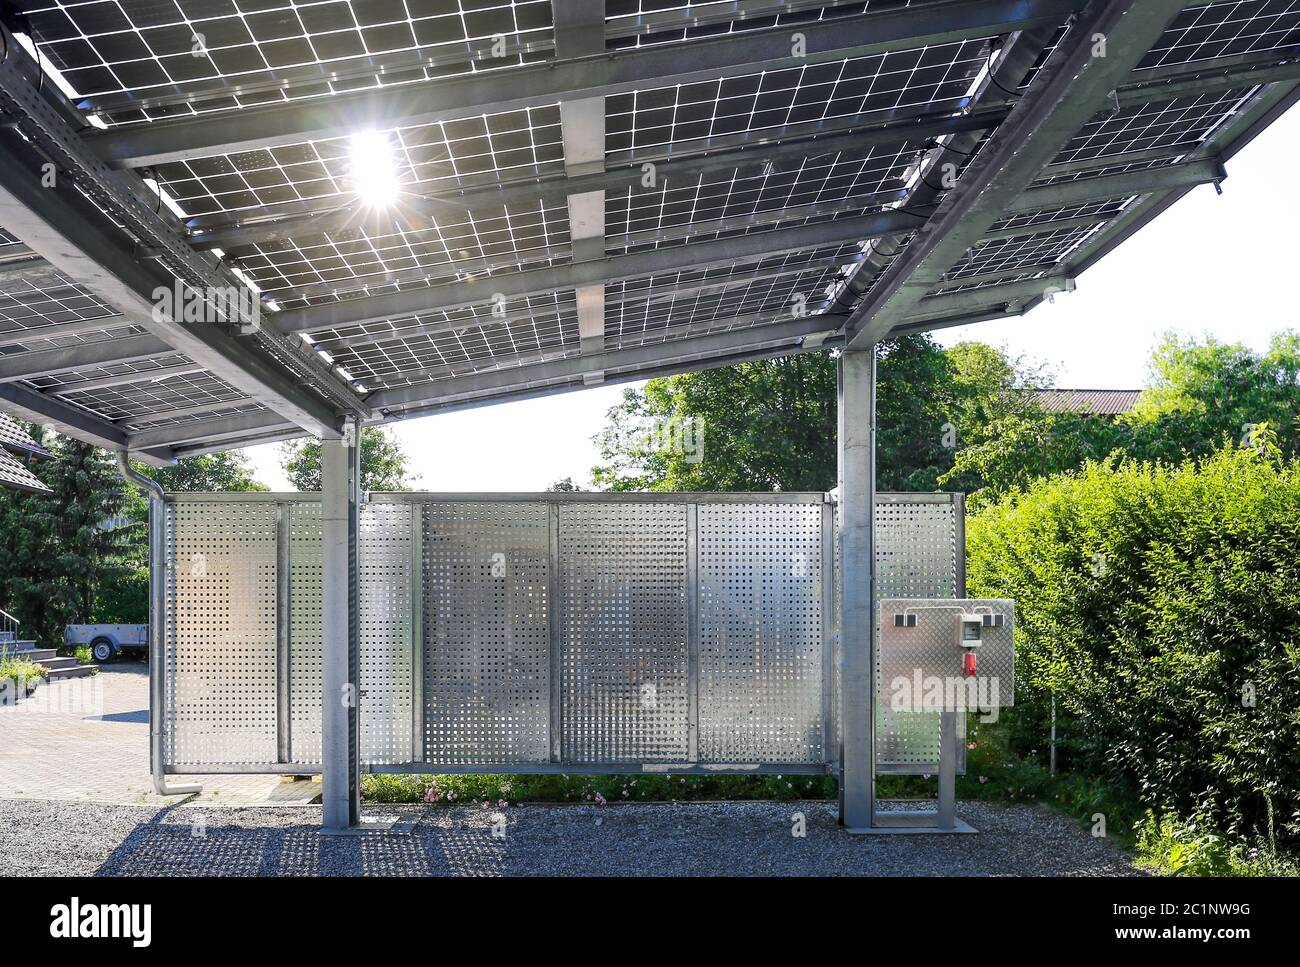 Nouveau carport avec module photovoltaïque semi-transparent Banque D'Images